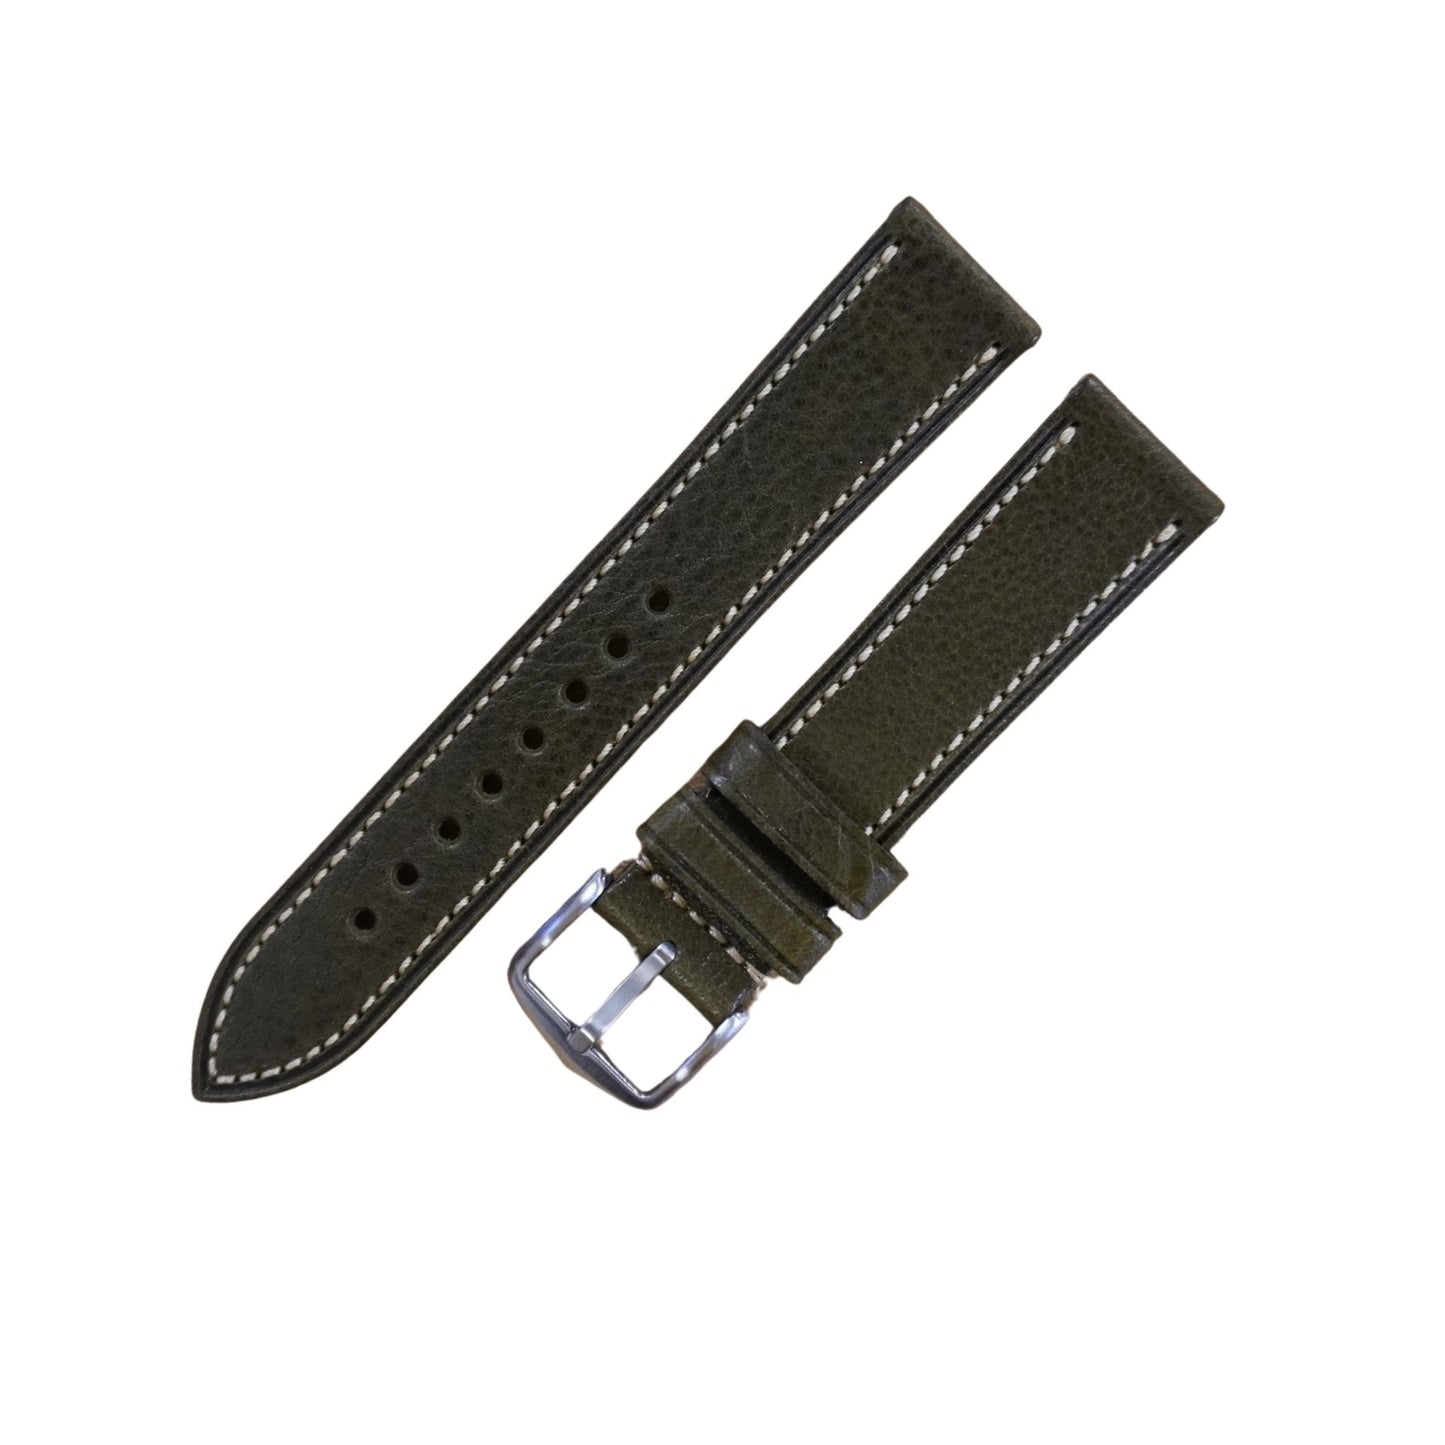 Bracelet montre cuir veau grain - MONTRE A PAPY - Montre automatique seiko mod 18mmGreen